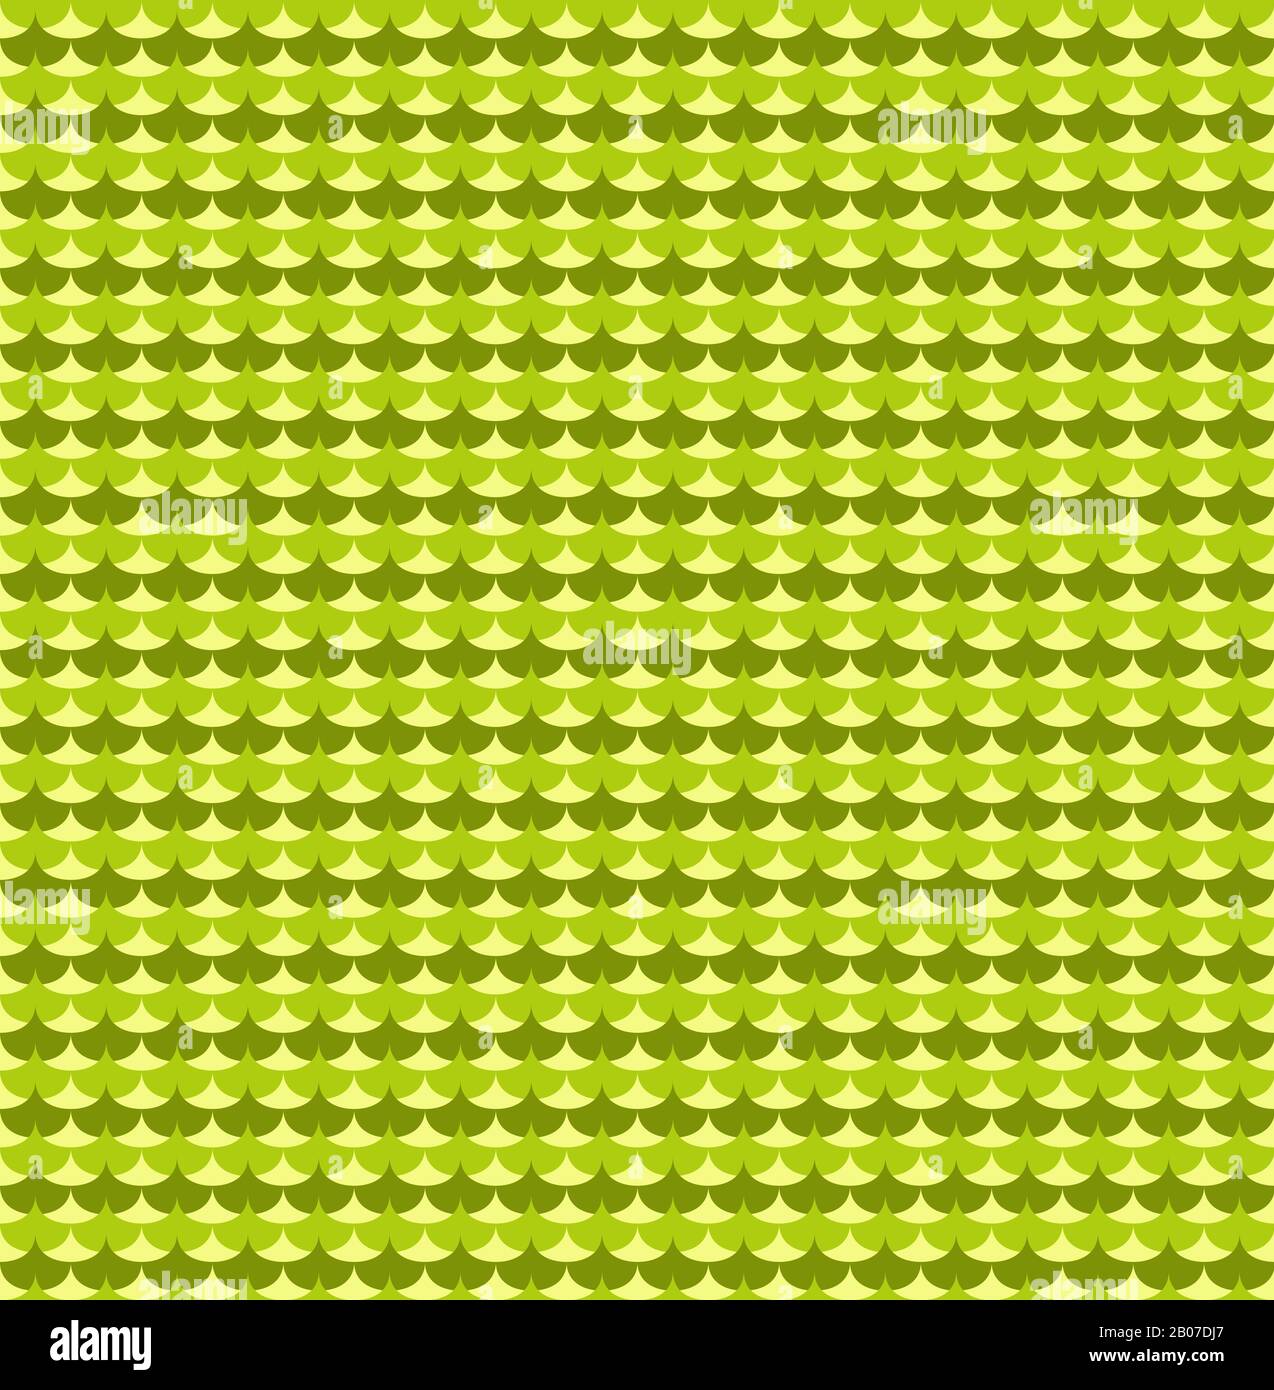 Le ginkgo biloba vert laisse le modèle sans couture. Arrière-plan graphique transparent et illustration vectorielle abstraite Illustration de Vecteur